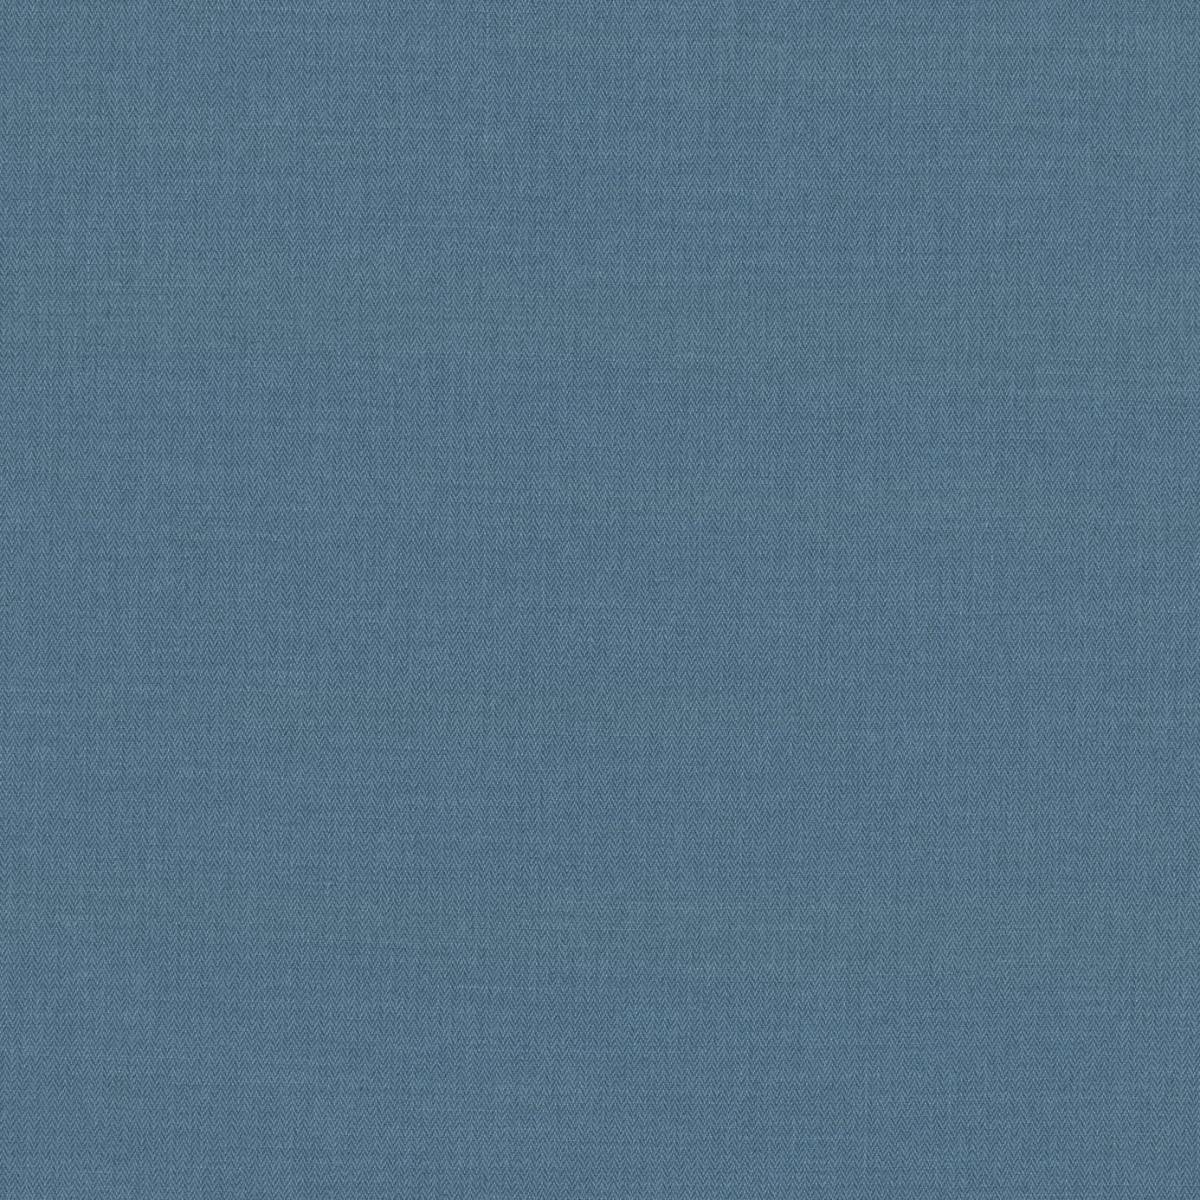 Romo Miro Fabric - Petrol Blue Product Code: 7867/47